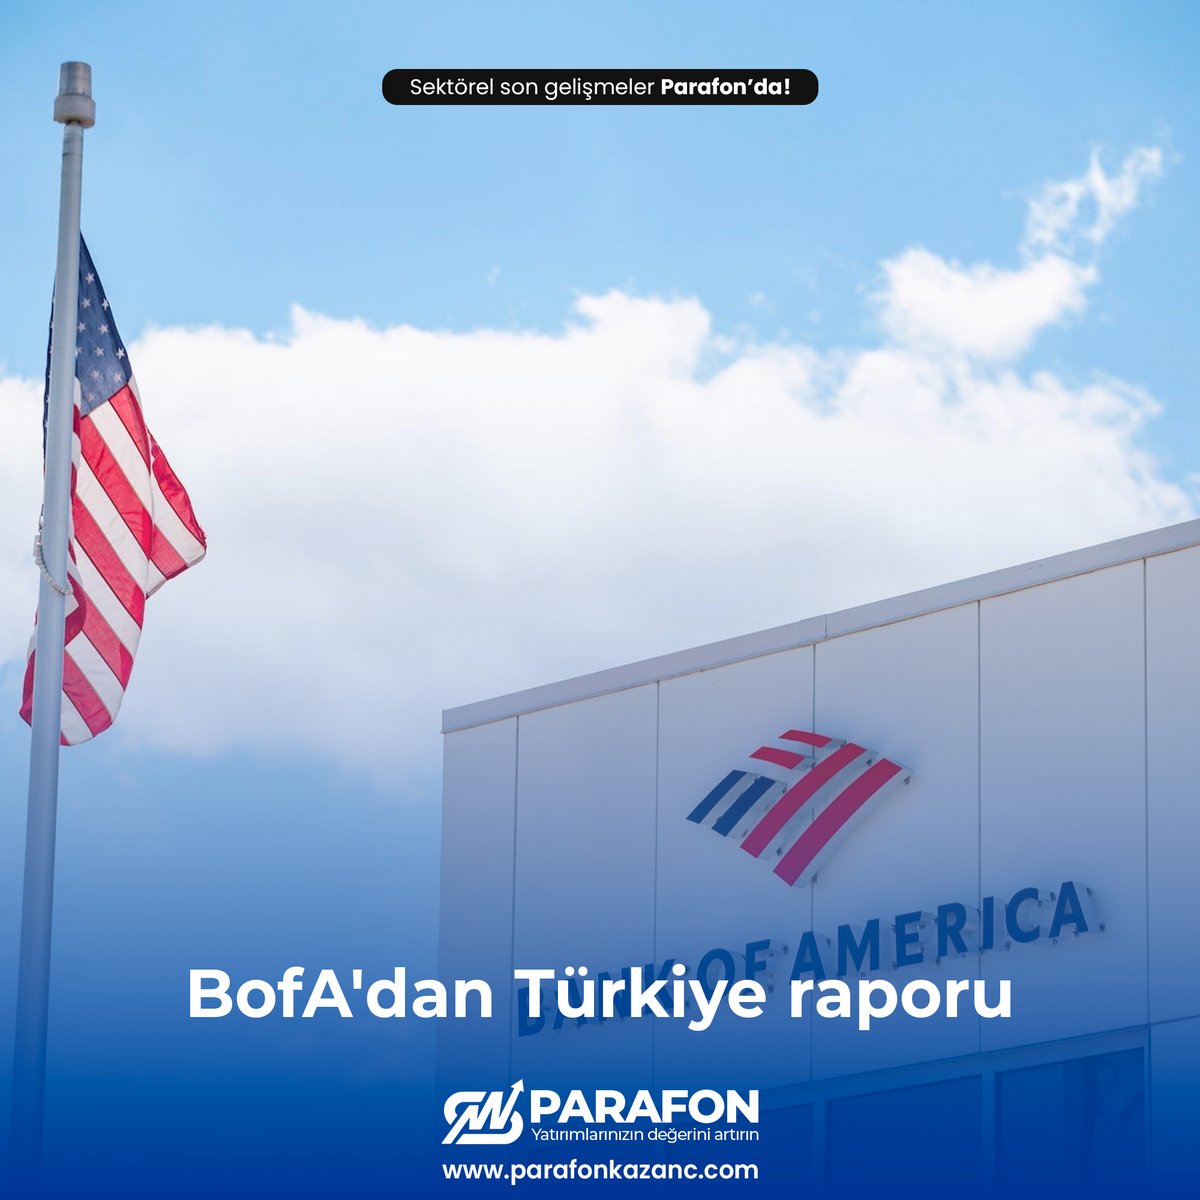 Bank of America'nın (BofA) raporuna göre, Türkiye'yi çok hızlı toparlanmayı yönetecek bir ekonomi olarak gördüklerini ifade eden yöneticiler, tam olarak bir toparlanma görebilmeleri için enflasyonda anlamlı düşüş görmeleri ve döviz tamponlarının oluşması gerektiğine işaret etti